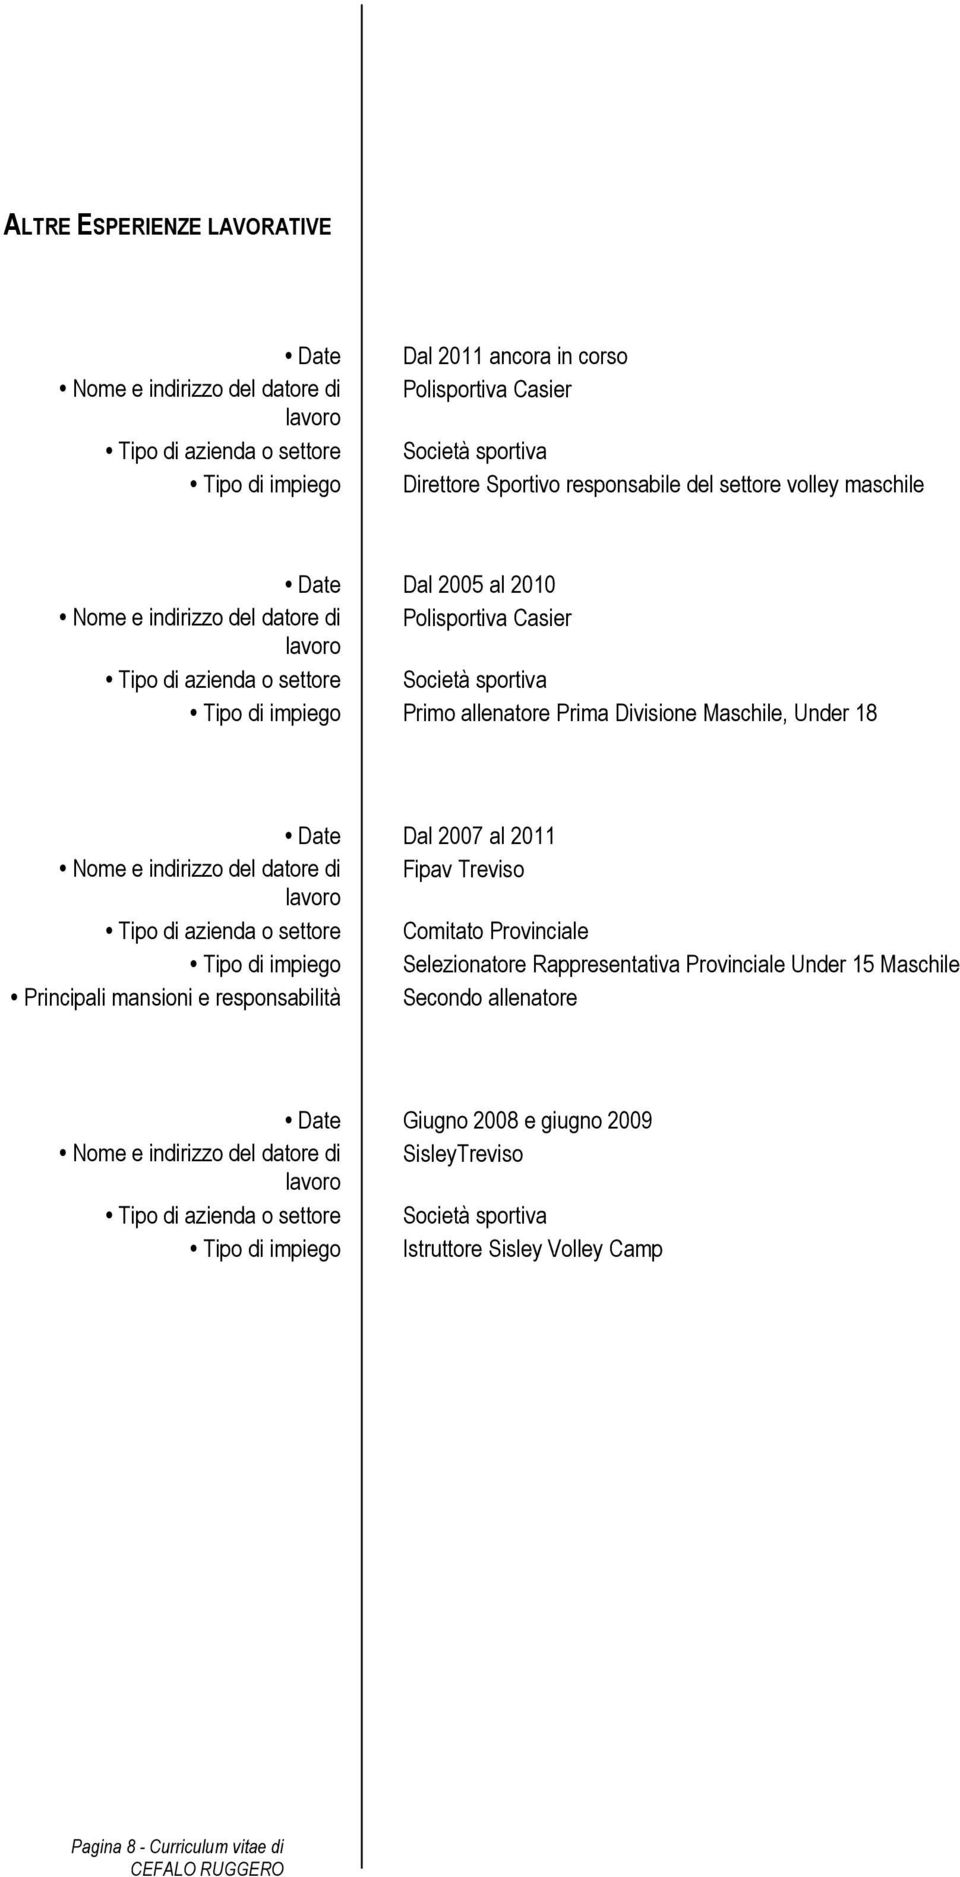 Prima Divisione Maschile, Under 18 Date Dal 2007 al 2011 Nome e indirizzo del datore di Fipav Treviso lavoro Tipo di azienda o settore Comitato Provinciale Tipo di impiego Selezionatore